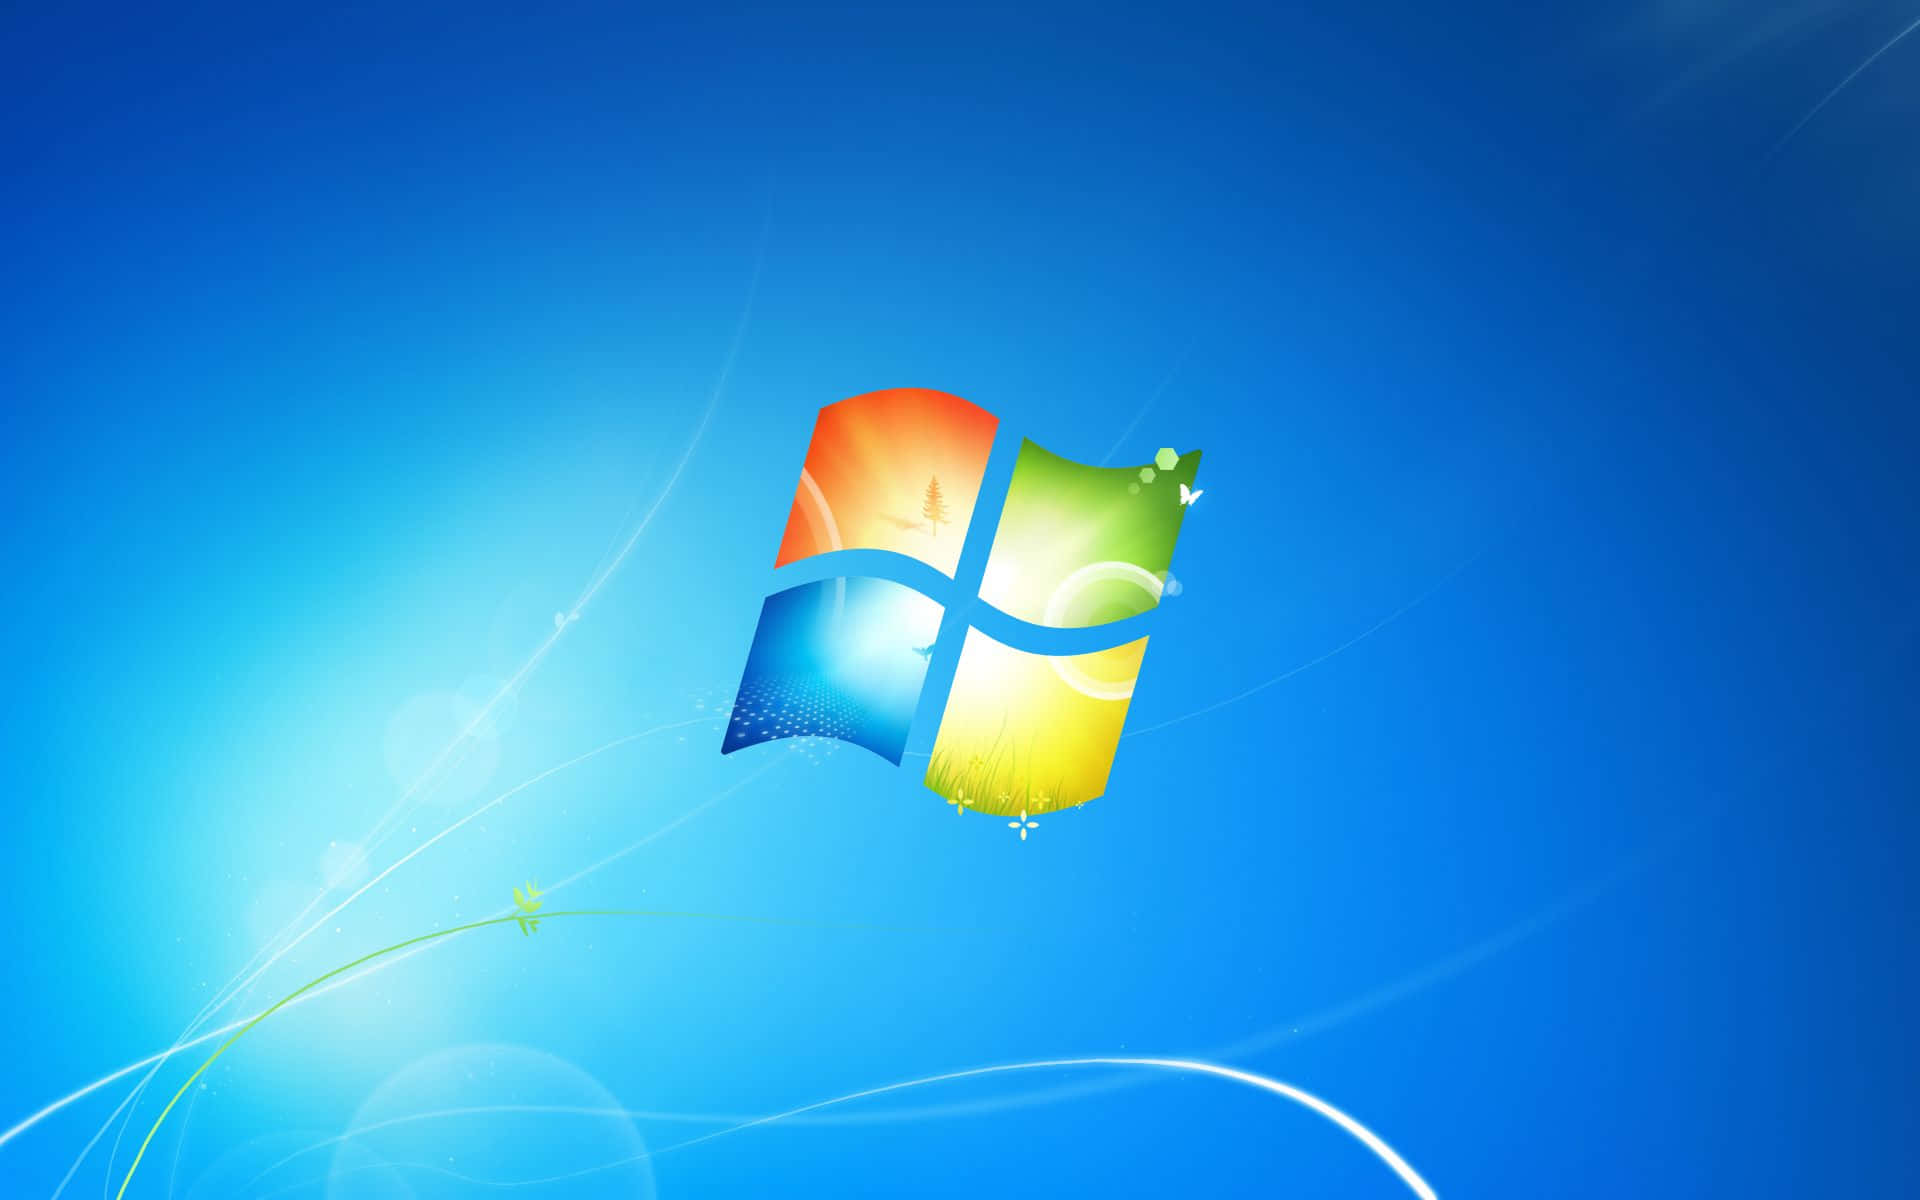 Windows7-logo På En Blå Baggrund